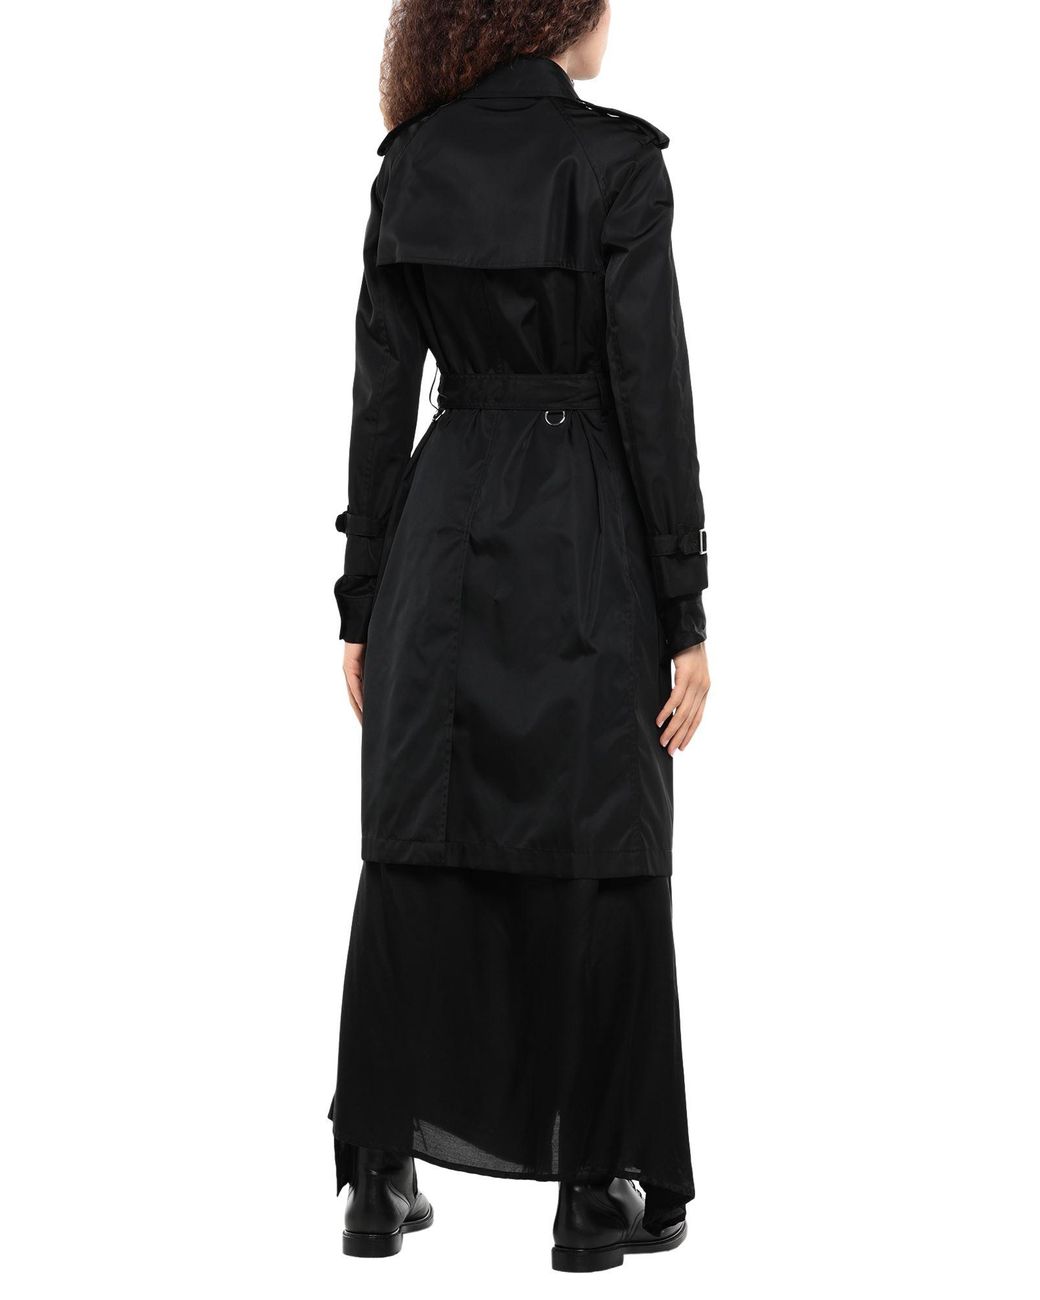 Cape Synthétique Burberry en coloris Noir Femme Vêtements Manteaux Capes 